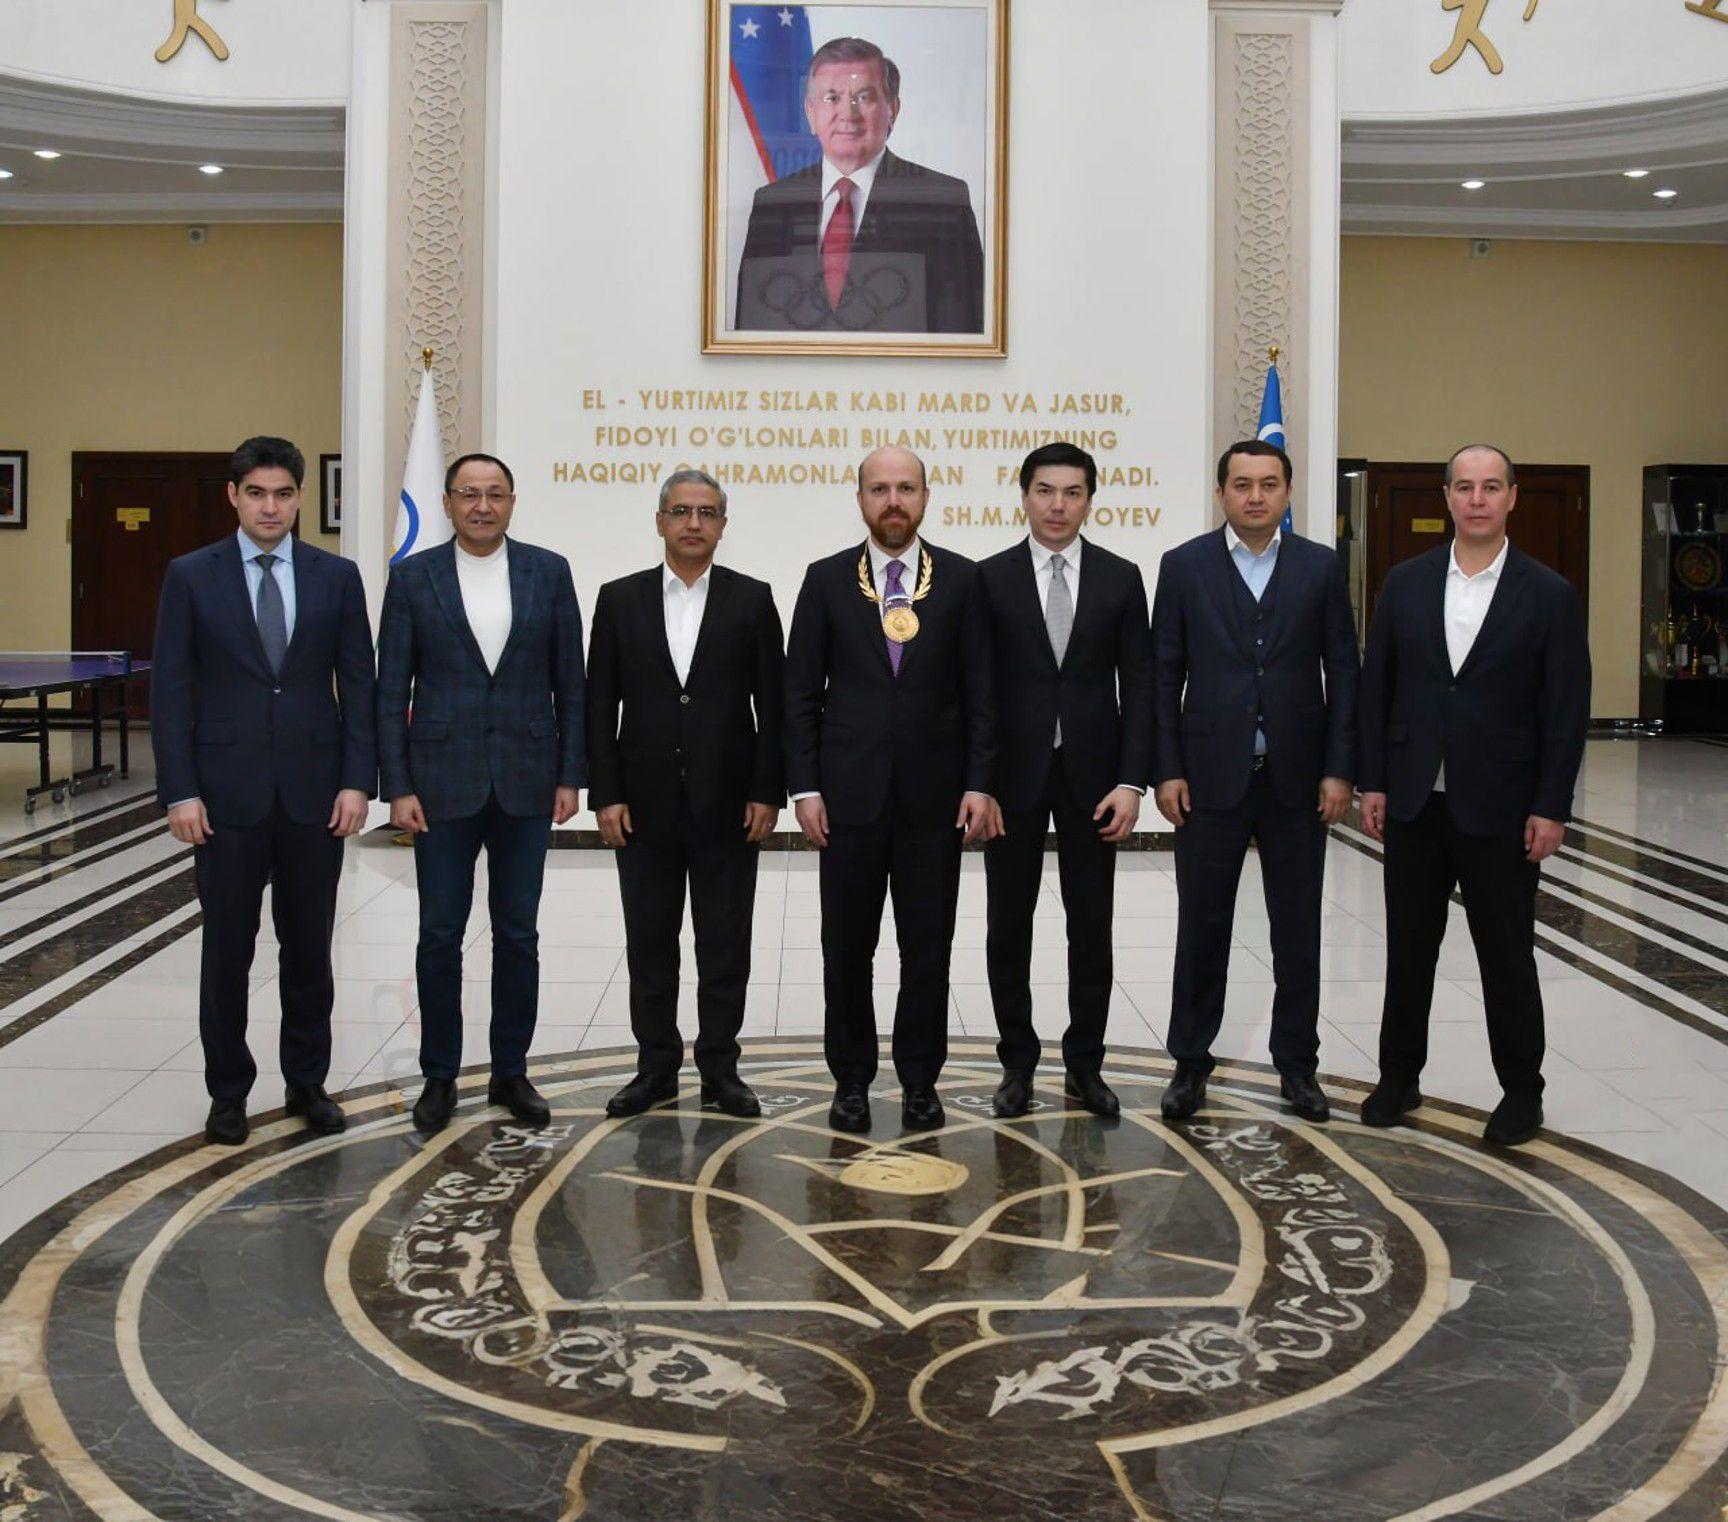 Узбекистан обсудил новые этапы сотрудничества с президентом WEC